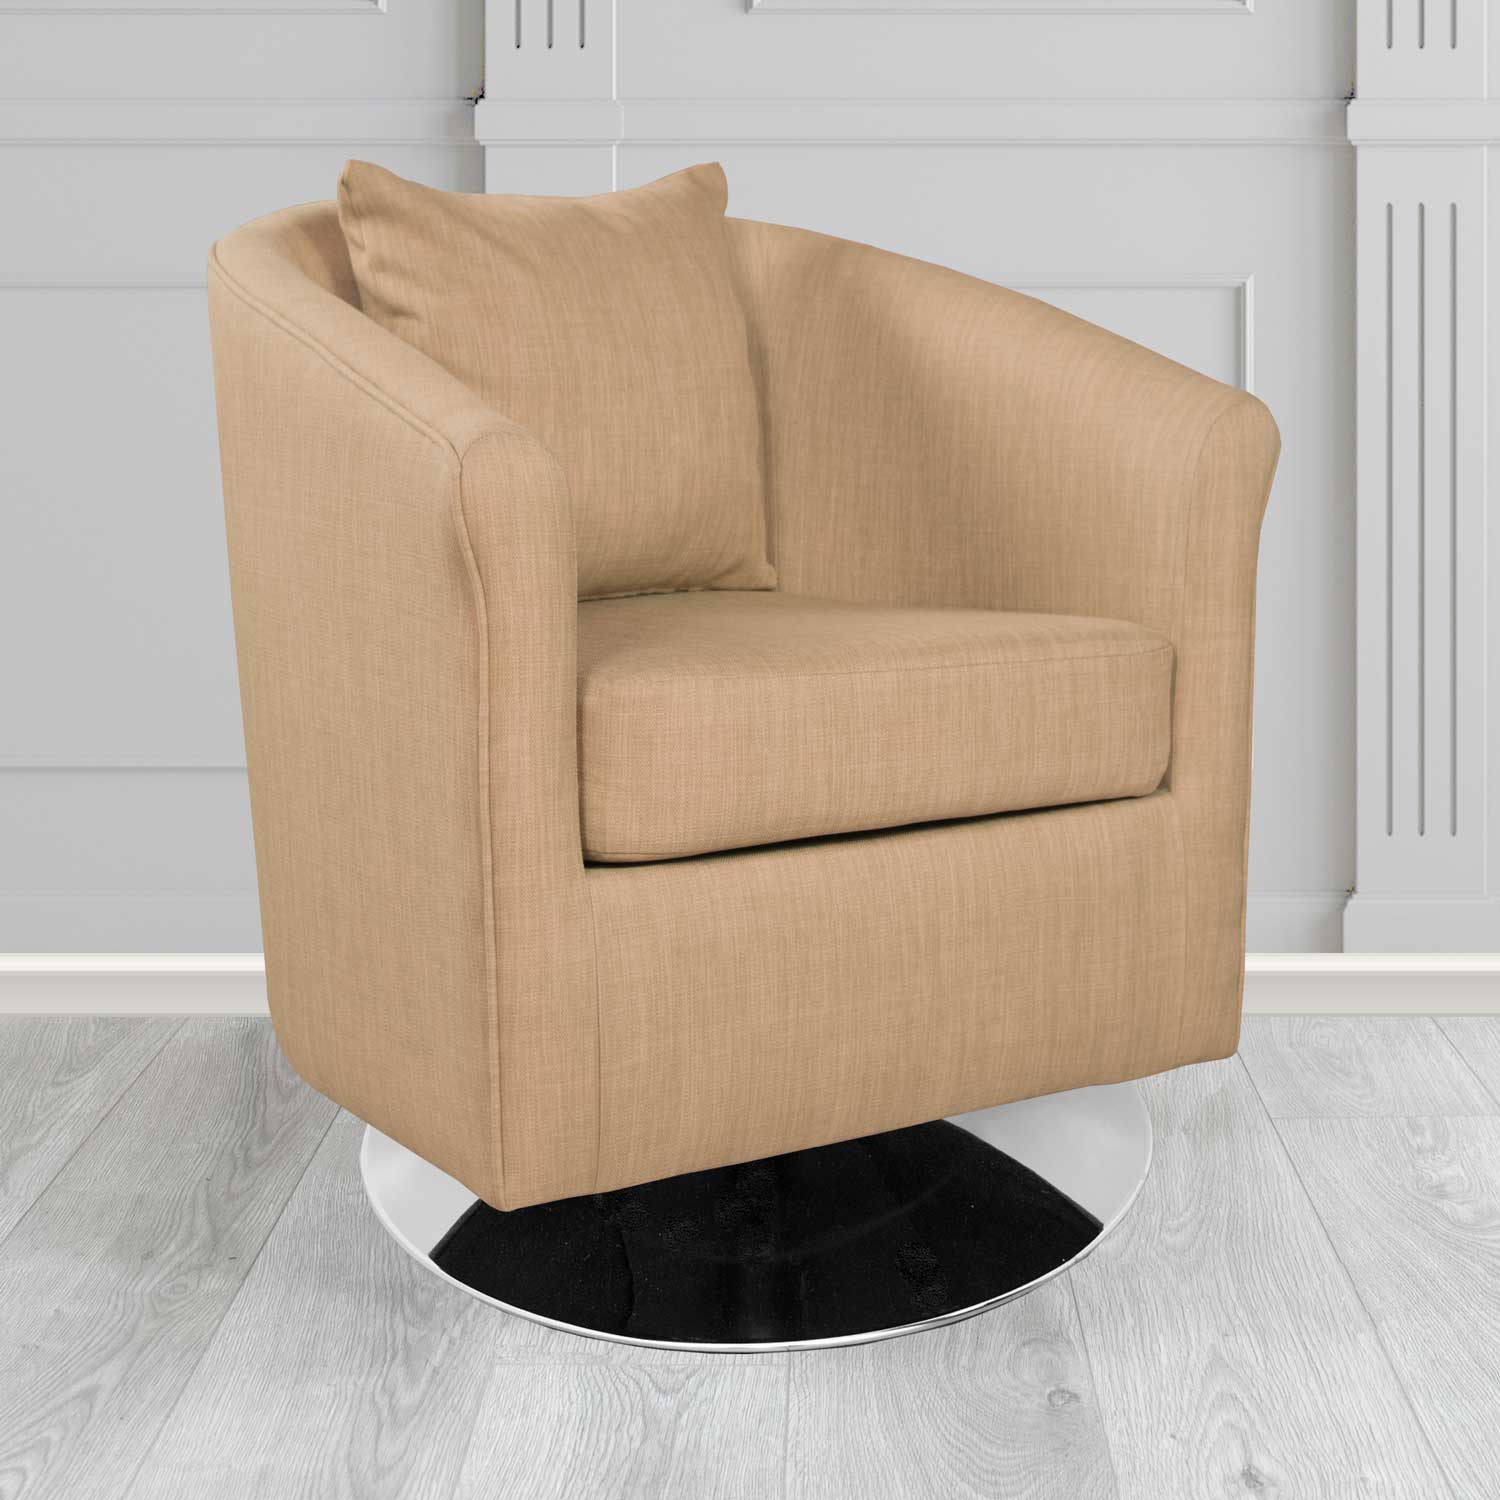 St Tropez Charles Honey Plain Linen Fabric Swivel Tub Chair - The Tub Chair Shop